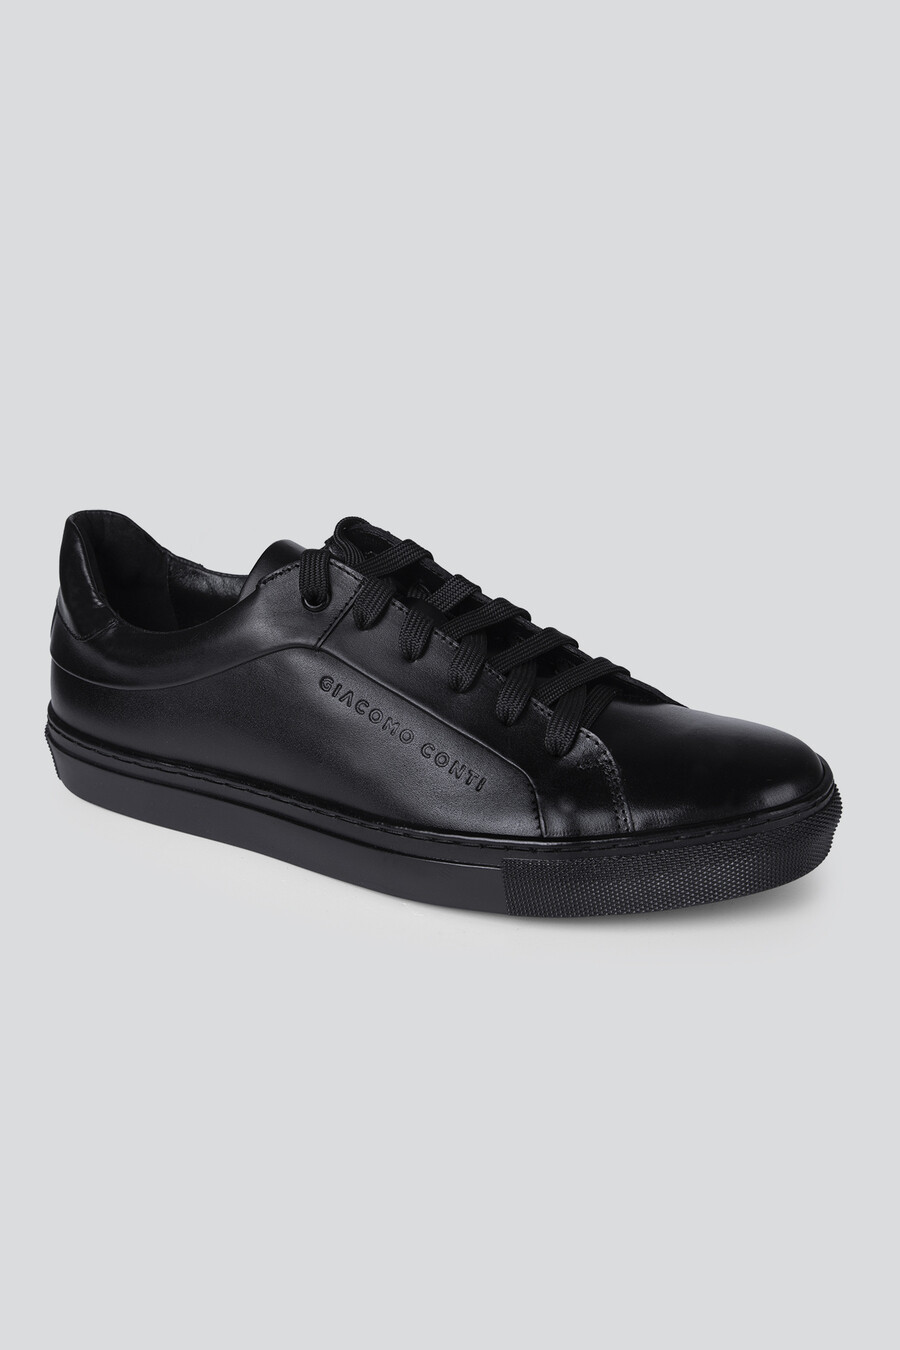 Czarne niskie sneakersy BUCN000172